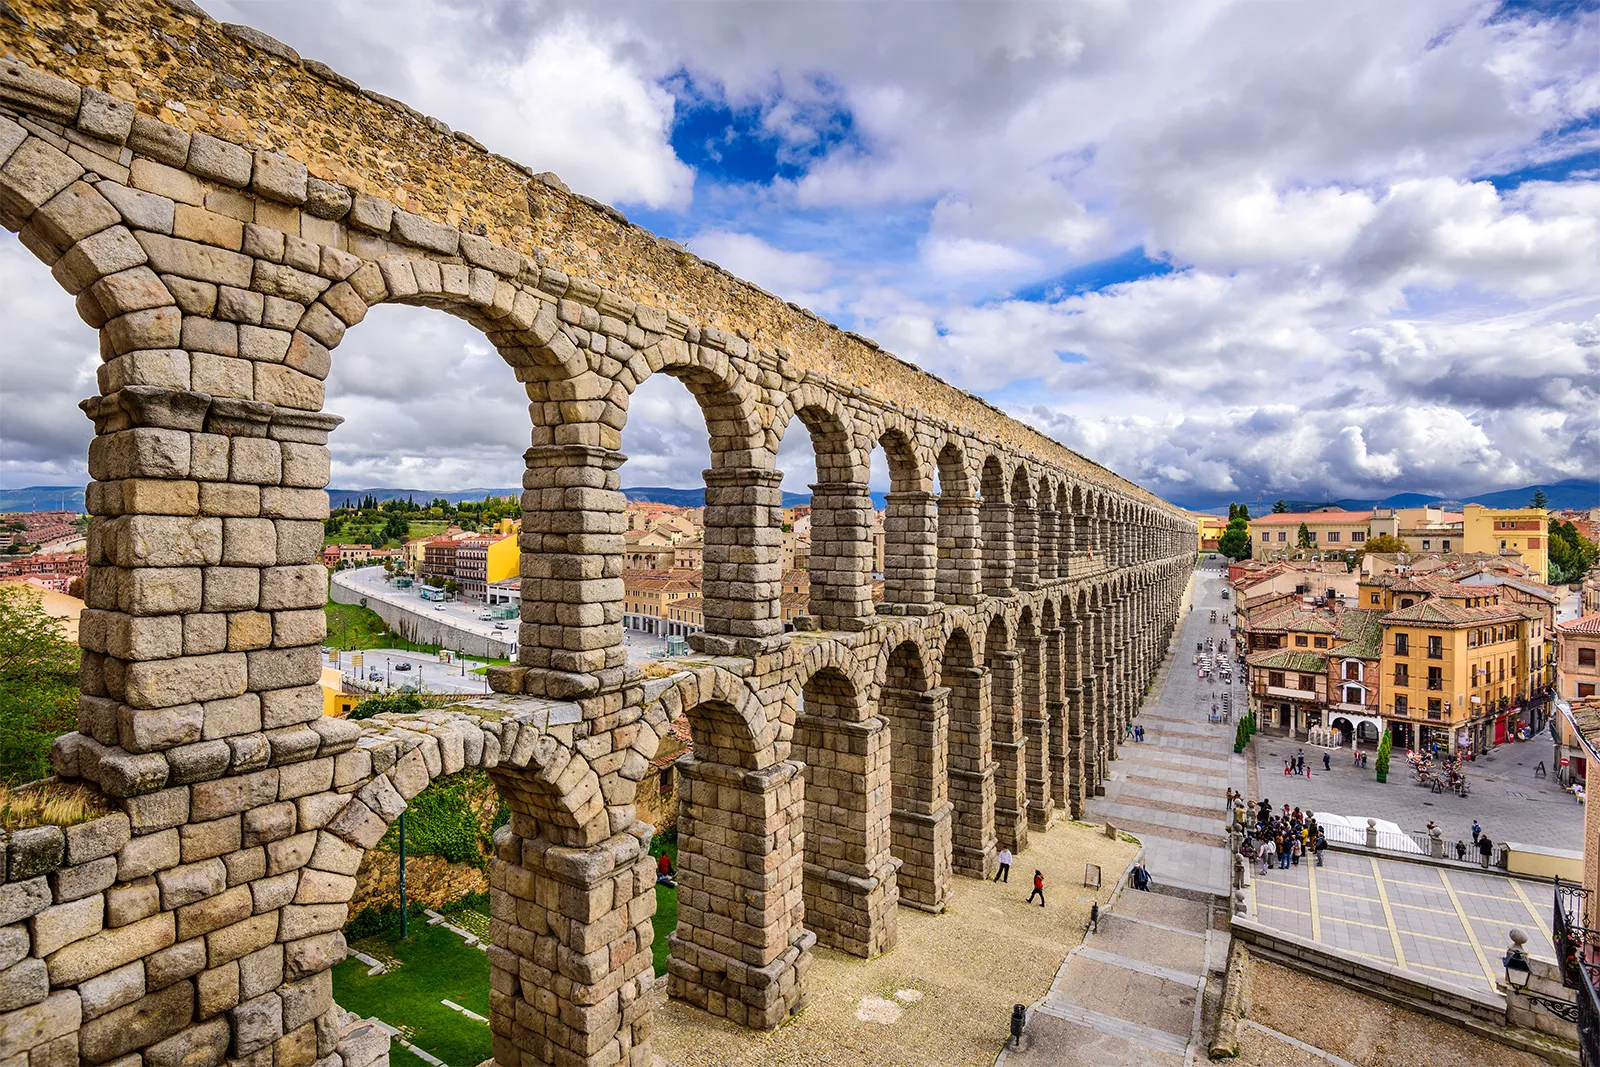 Aqueduct, Segovia. 50 BCE